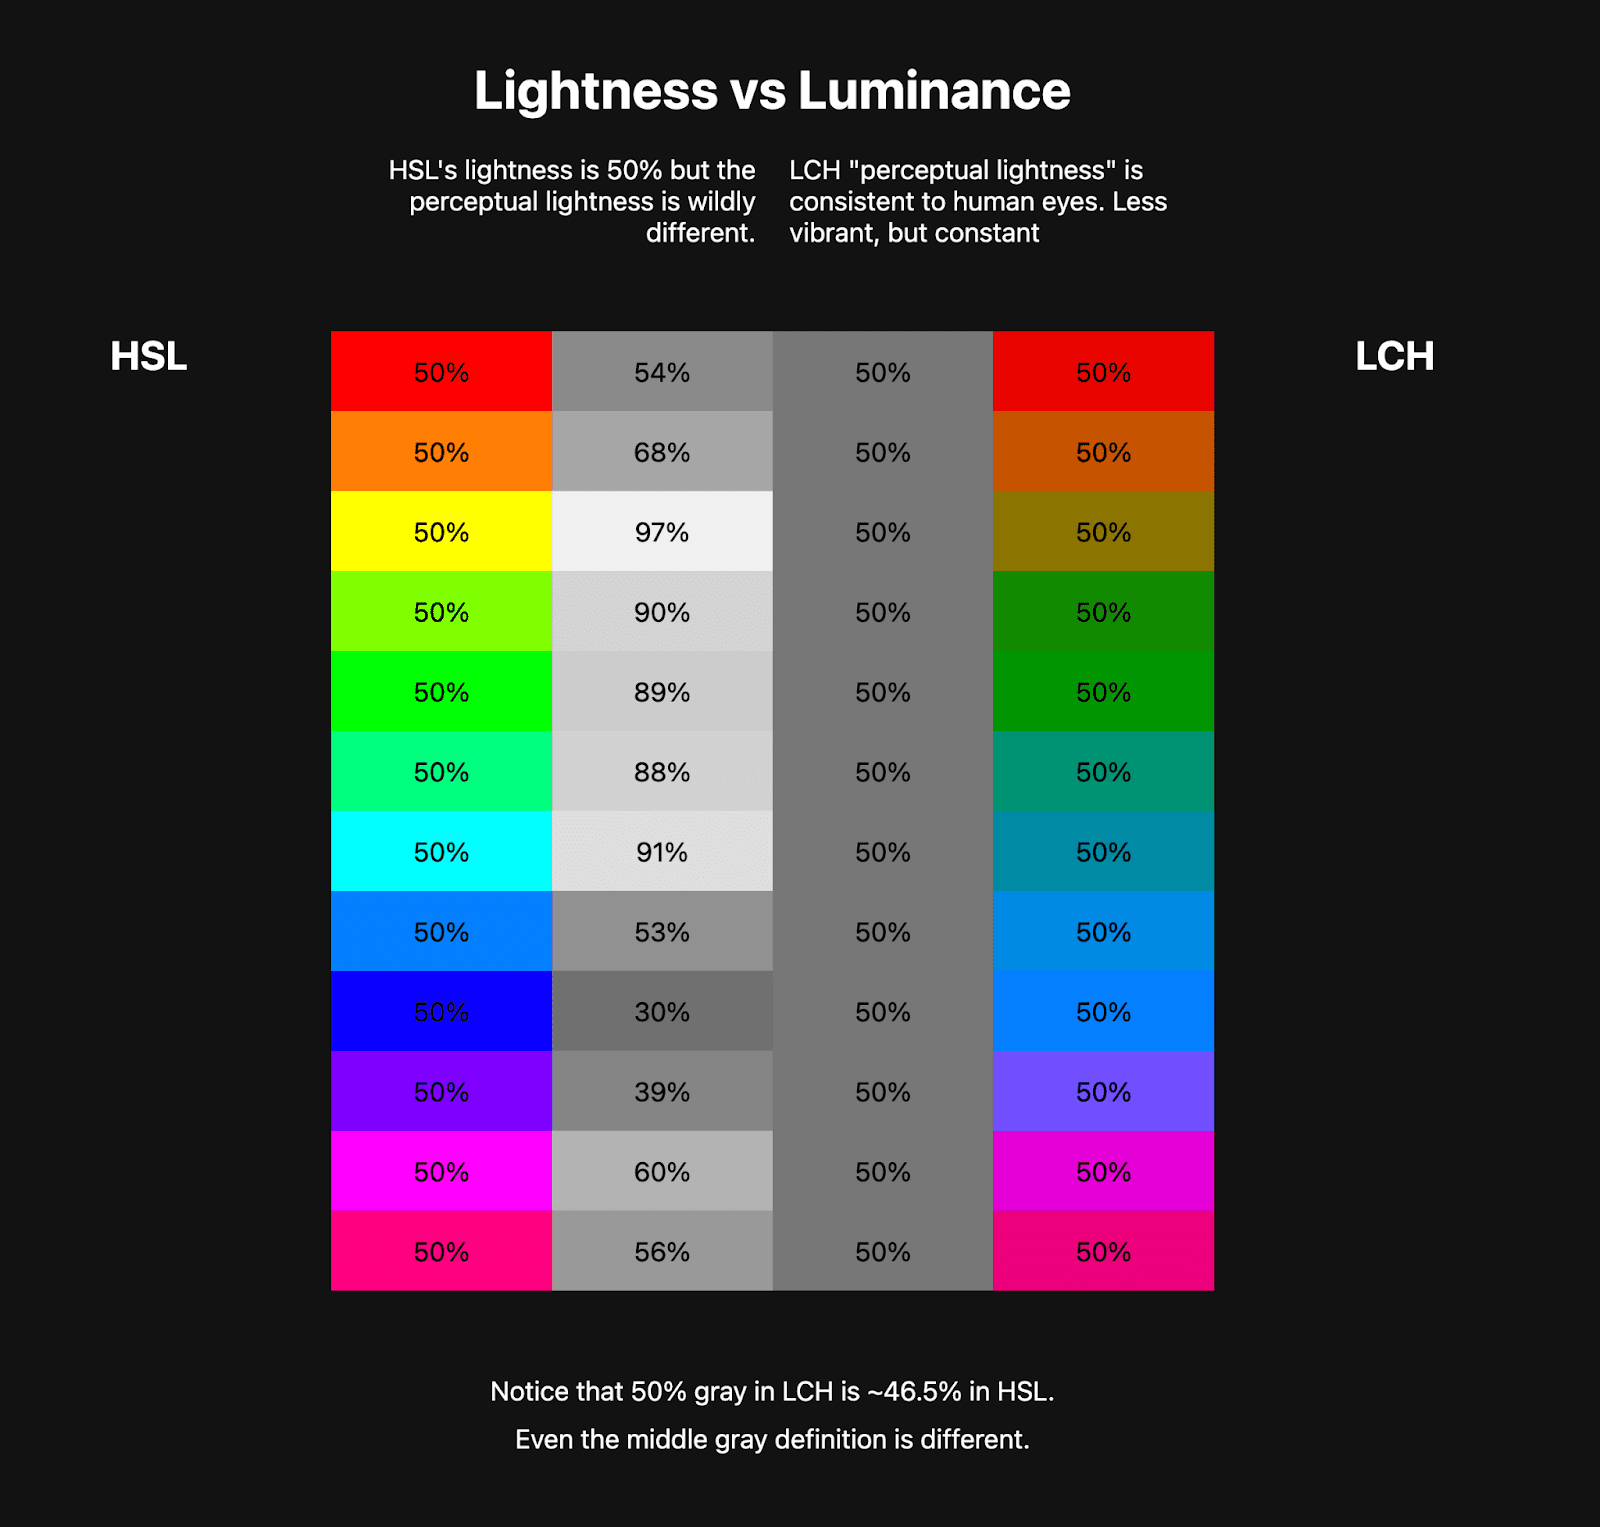 색상 표 두 개가 나란히 표시됩니다. 첫 번째 표에는 10가지 정도의 HSL 무지개가 표시되고 그 옆에는 이러한 HSL 색상의 밝기를 나타내는 그레이 스케일 색상이 있습니다. 두 번째 표는 LCH 무지개를 훨씬 덜 선명하게 보여주지만 옆에 있는 그레이 스케일 색상은 일관됩니다.
    이는 LCH가 건강한 상수 밝기 값을 갖는 반면 HSL은 그렇지 않다는 것을 보여줍니다.